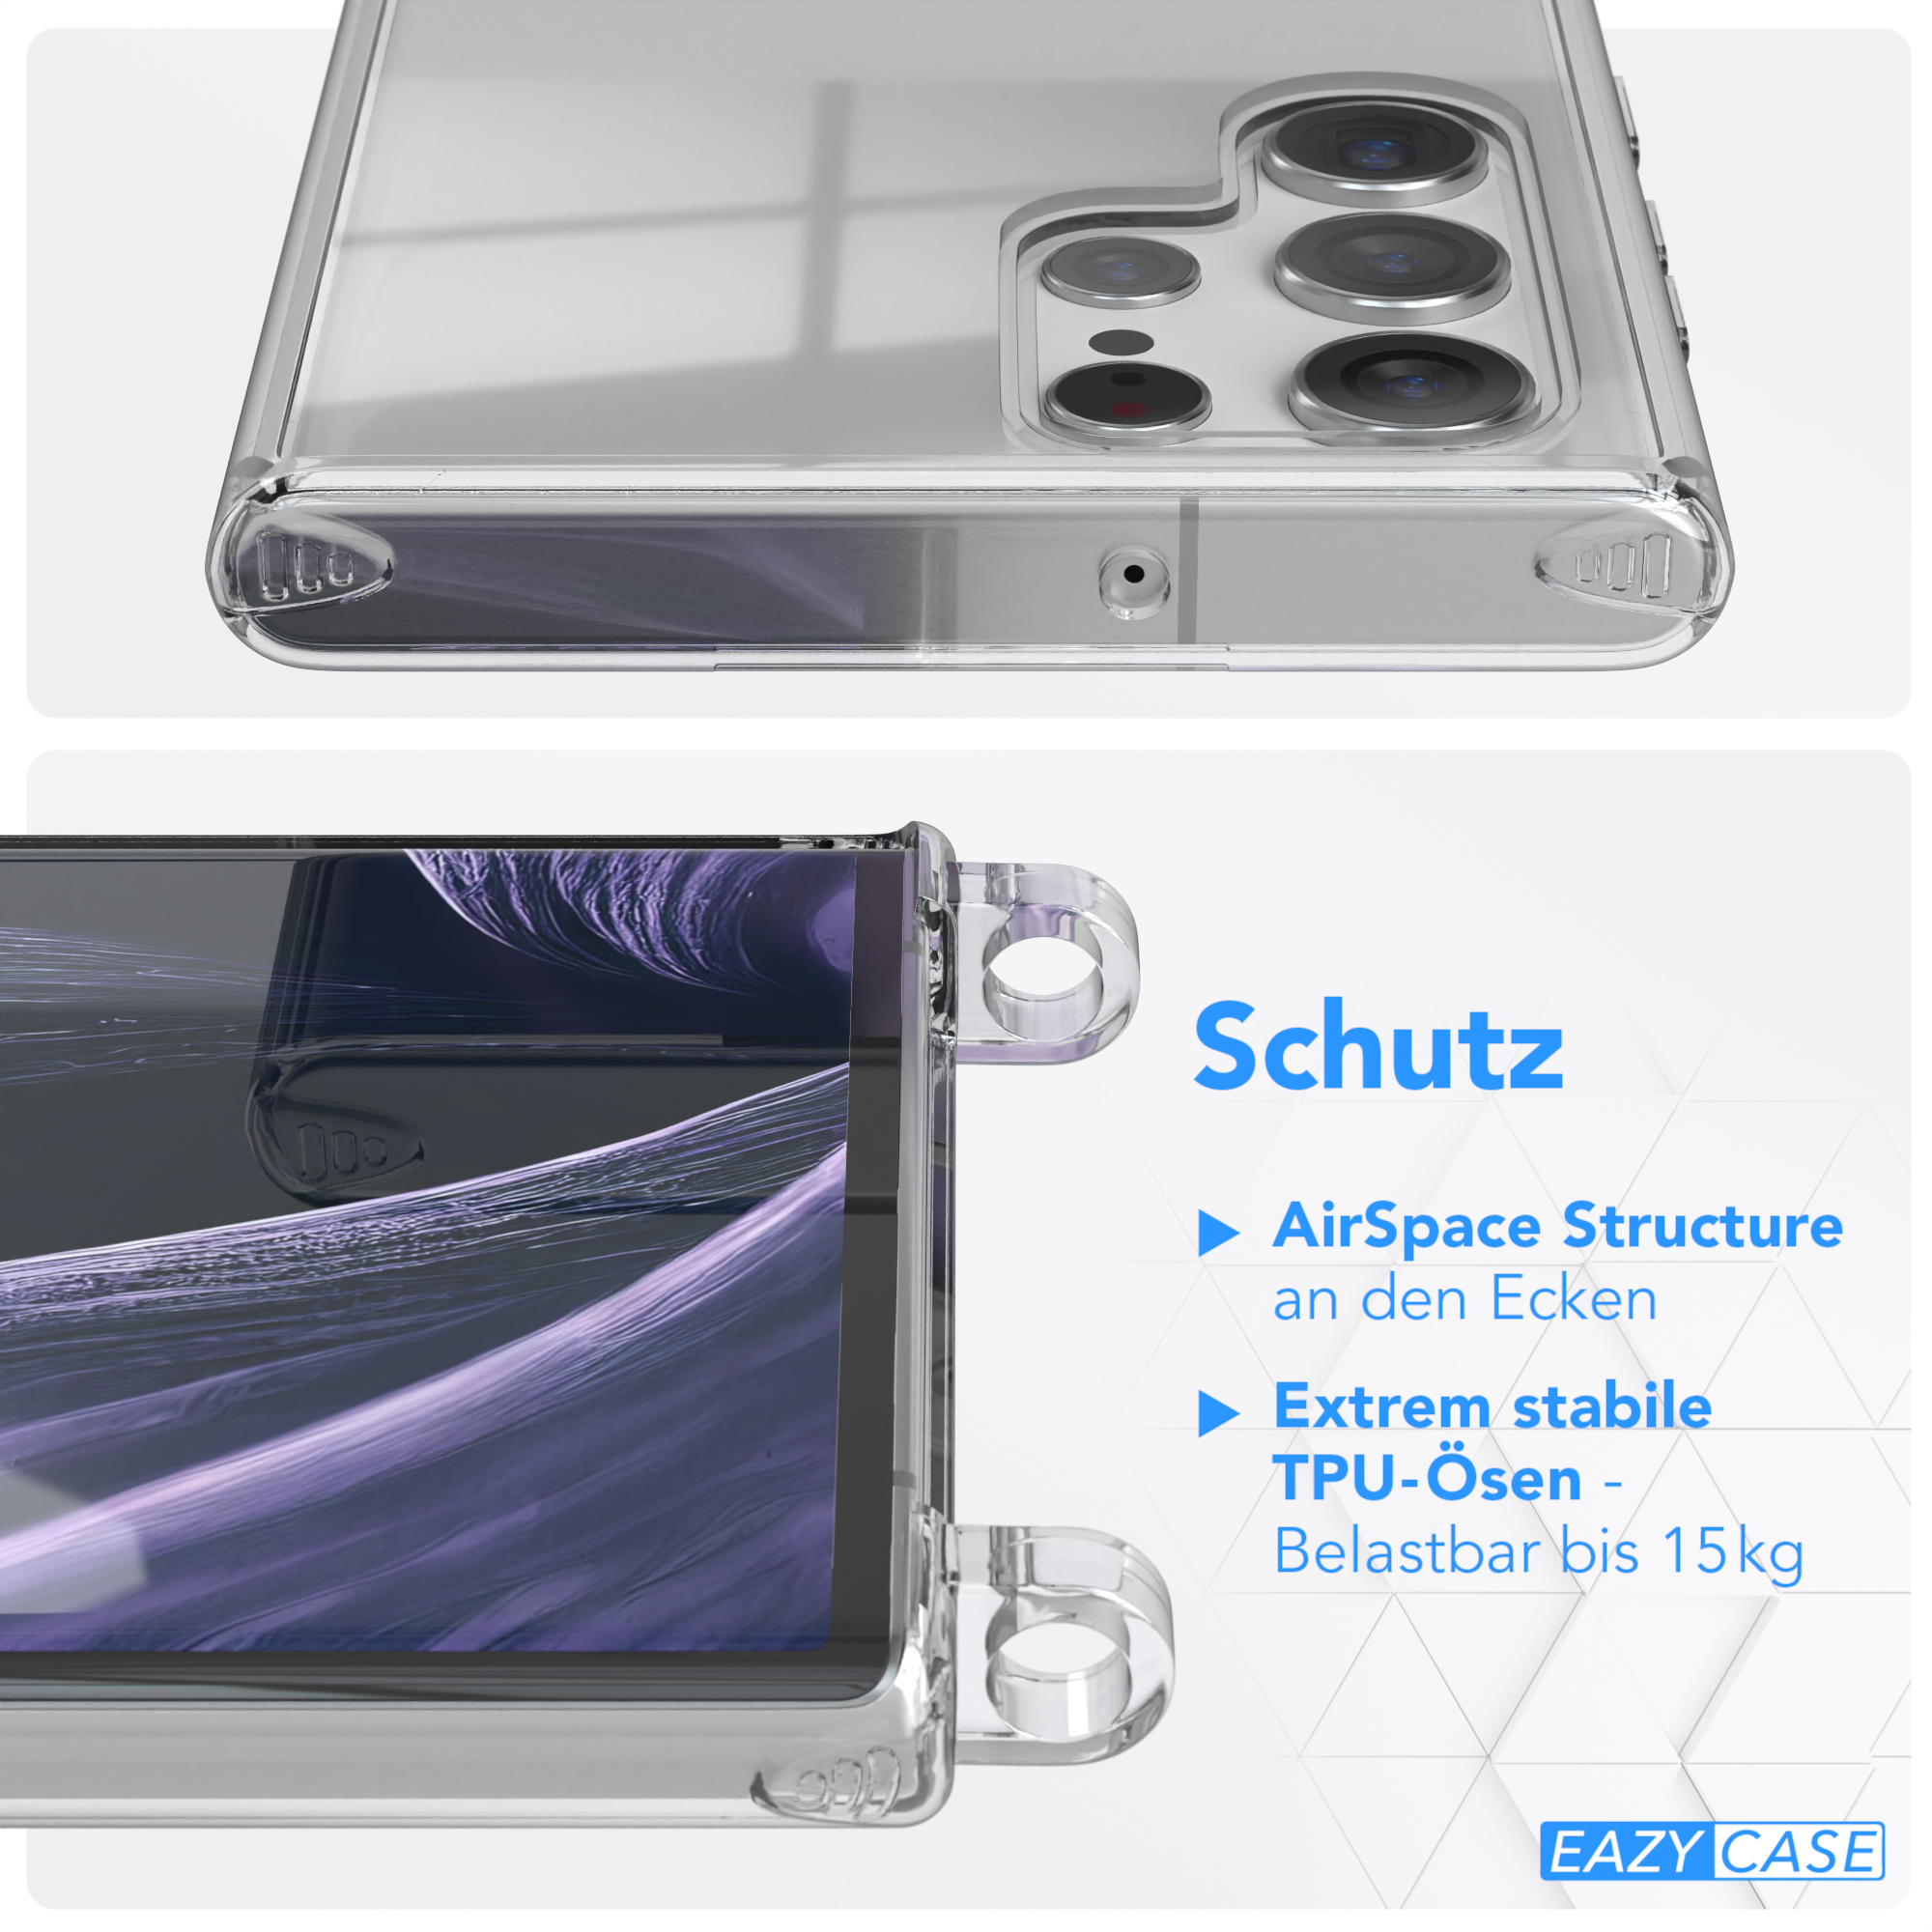 EAZY CASE Transparente Handyhülle mit Lila S22 Galaxy runder unifarbend, Kette Ultra / Flieder Umhängetasche, 5G, Samsung